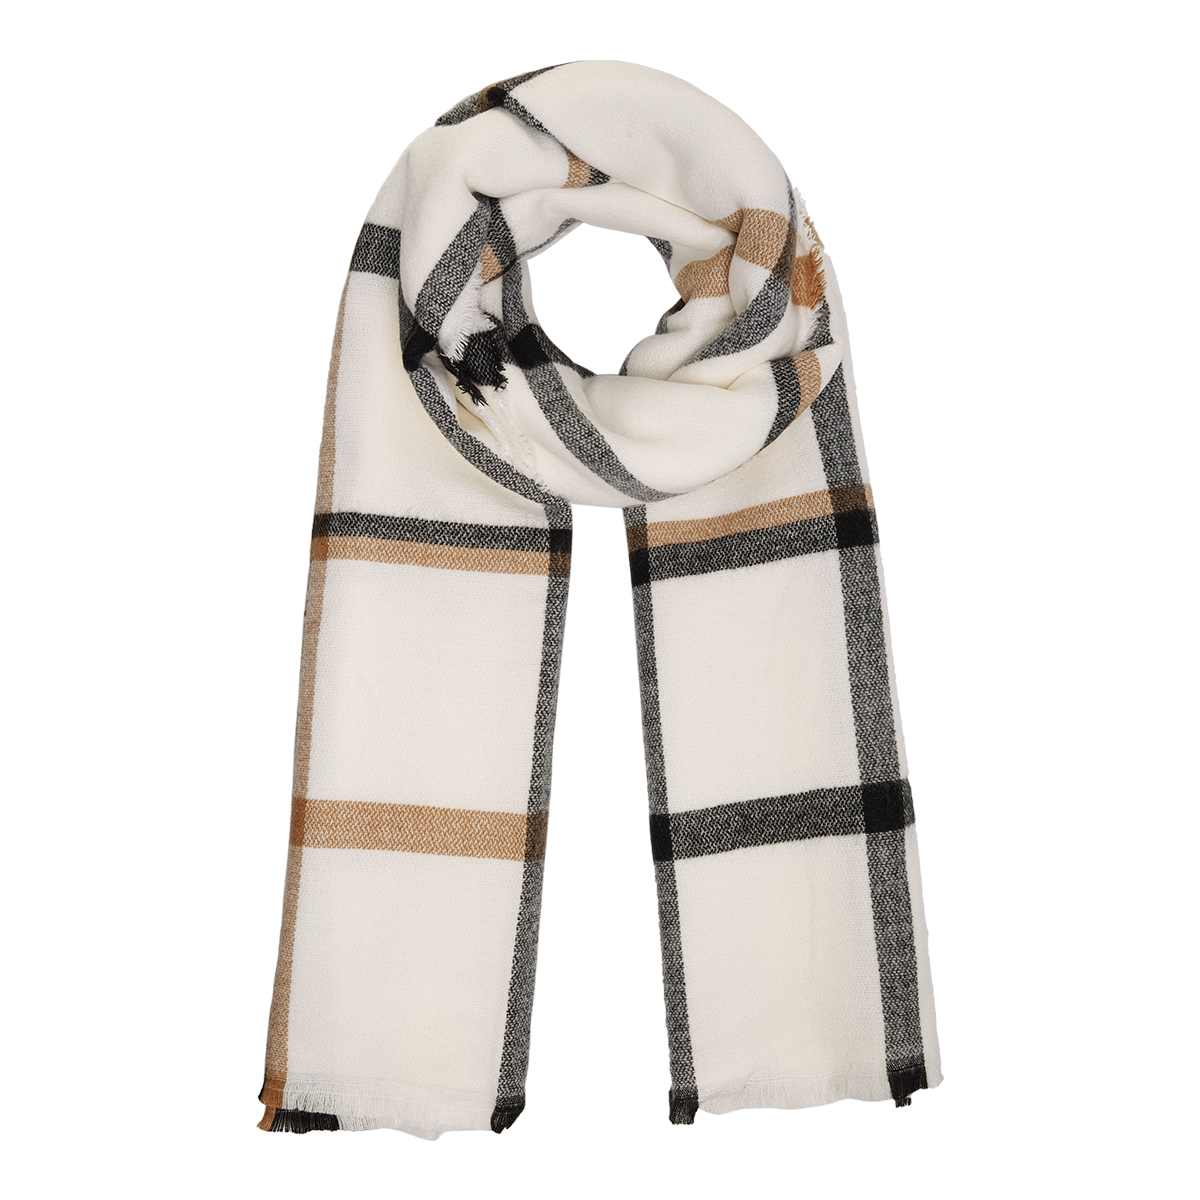 Proficiat Precies binden Warme winter sjaal Cream geruit geblokt wit - Scarfz - De grootste  collectie sjaals online!